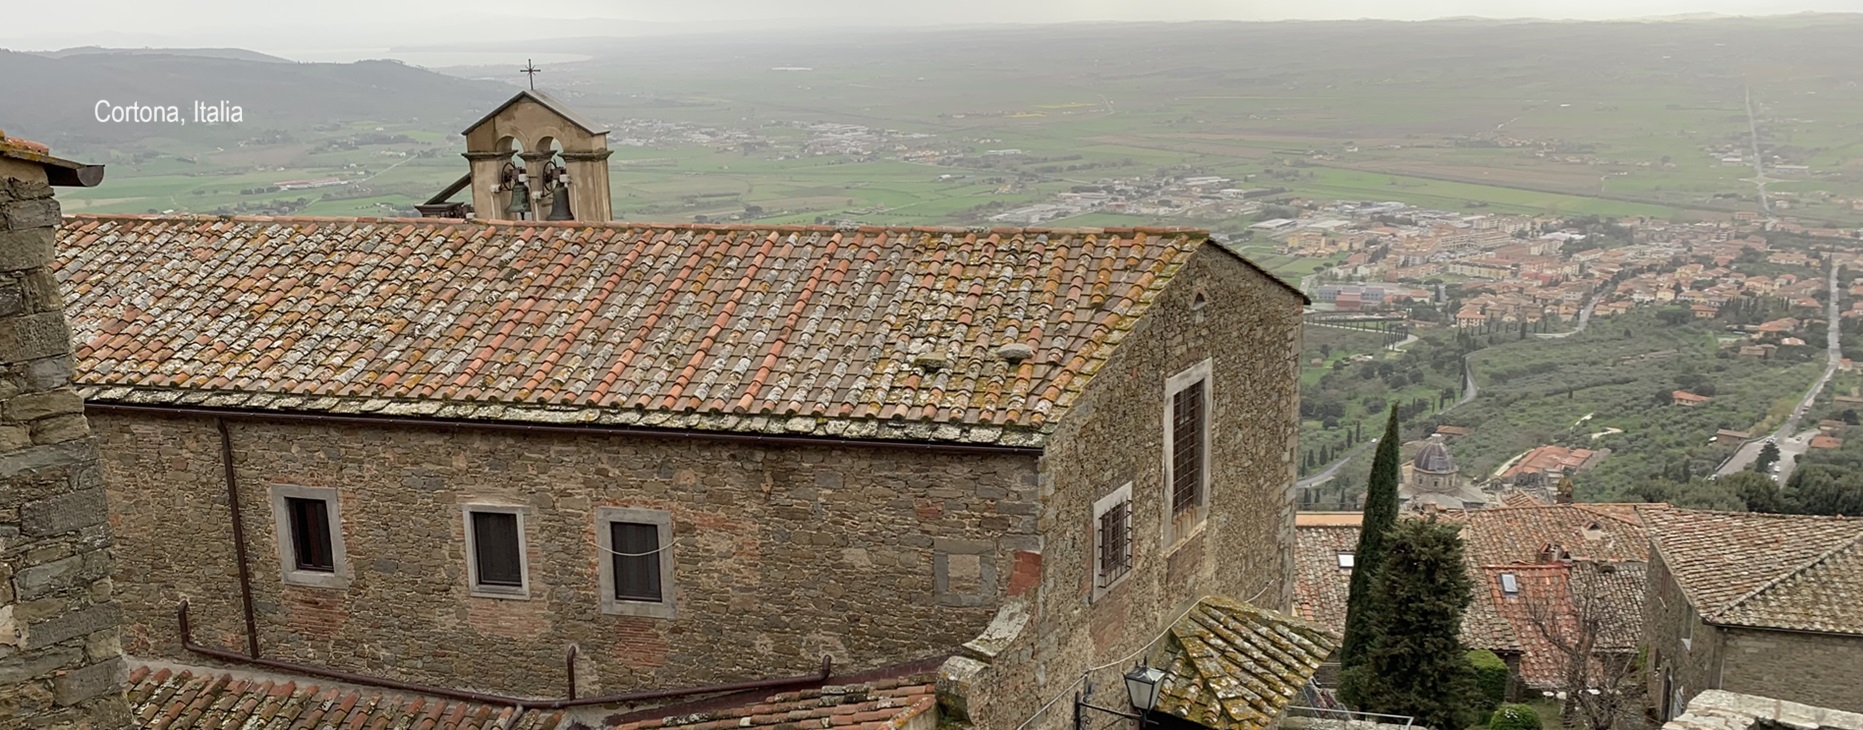 Corso di formazione monastica - Assisi